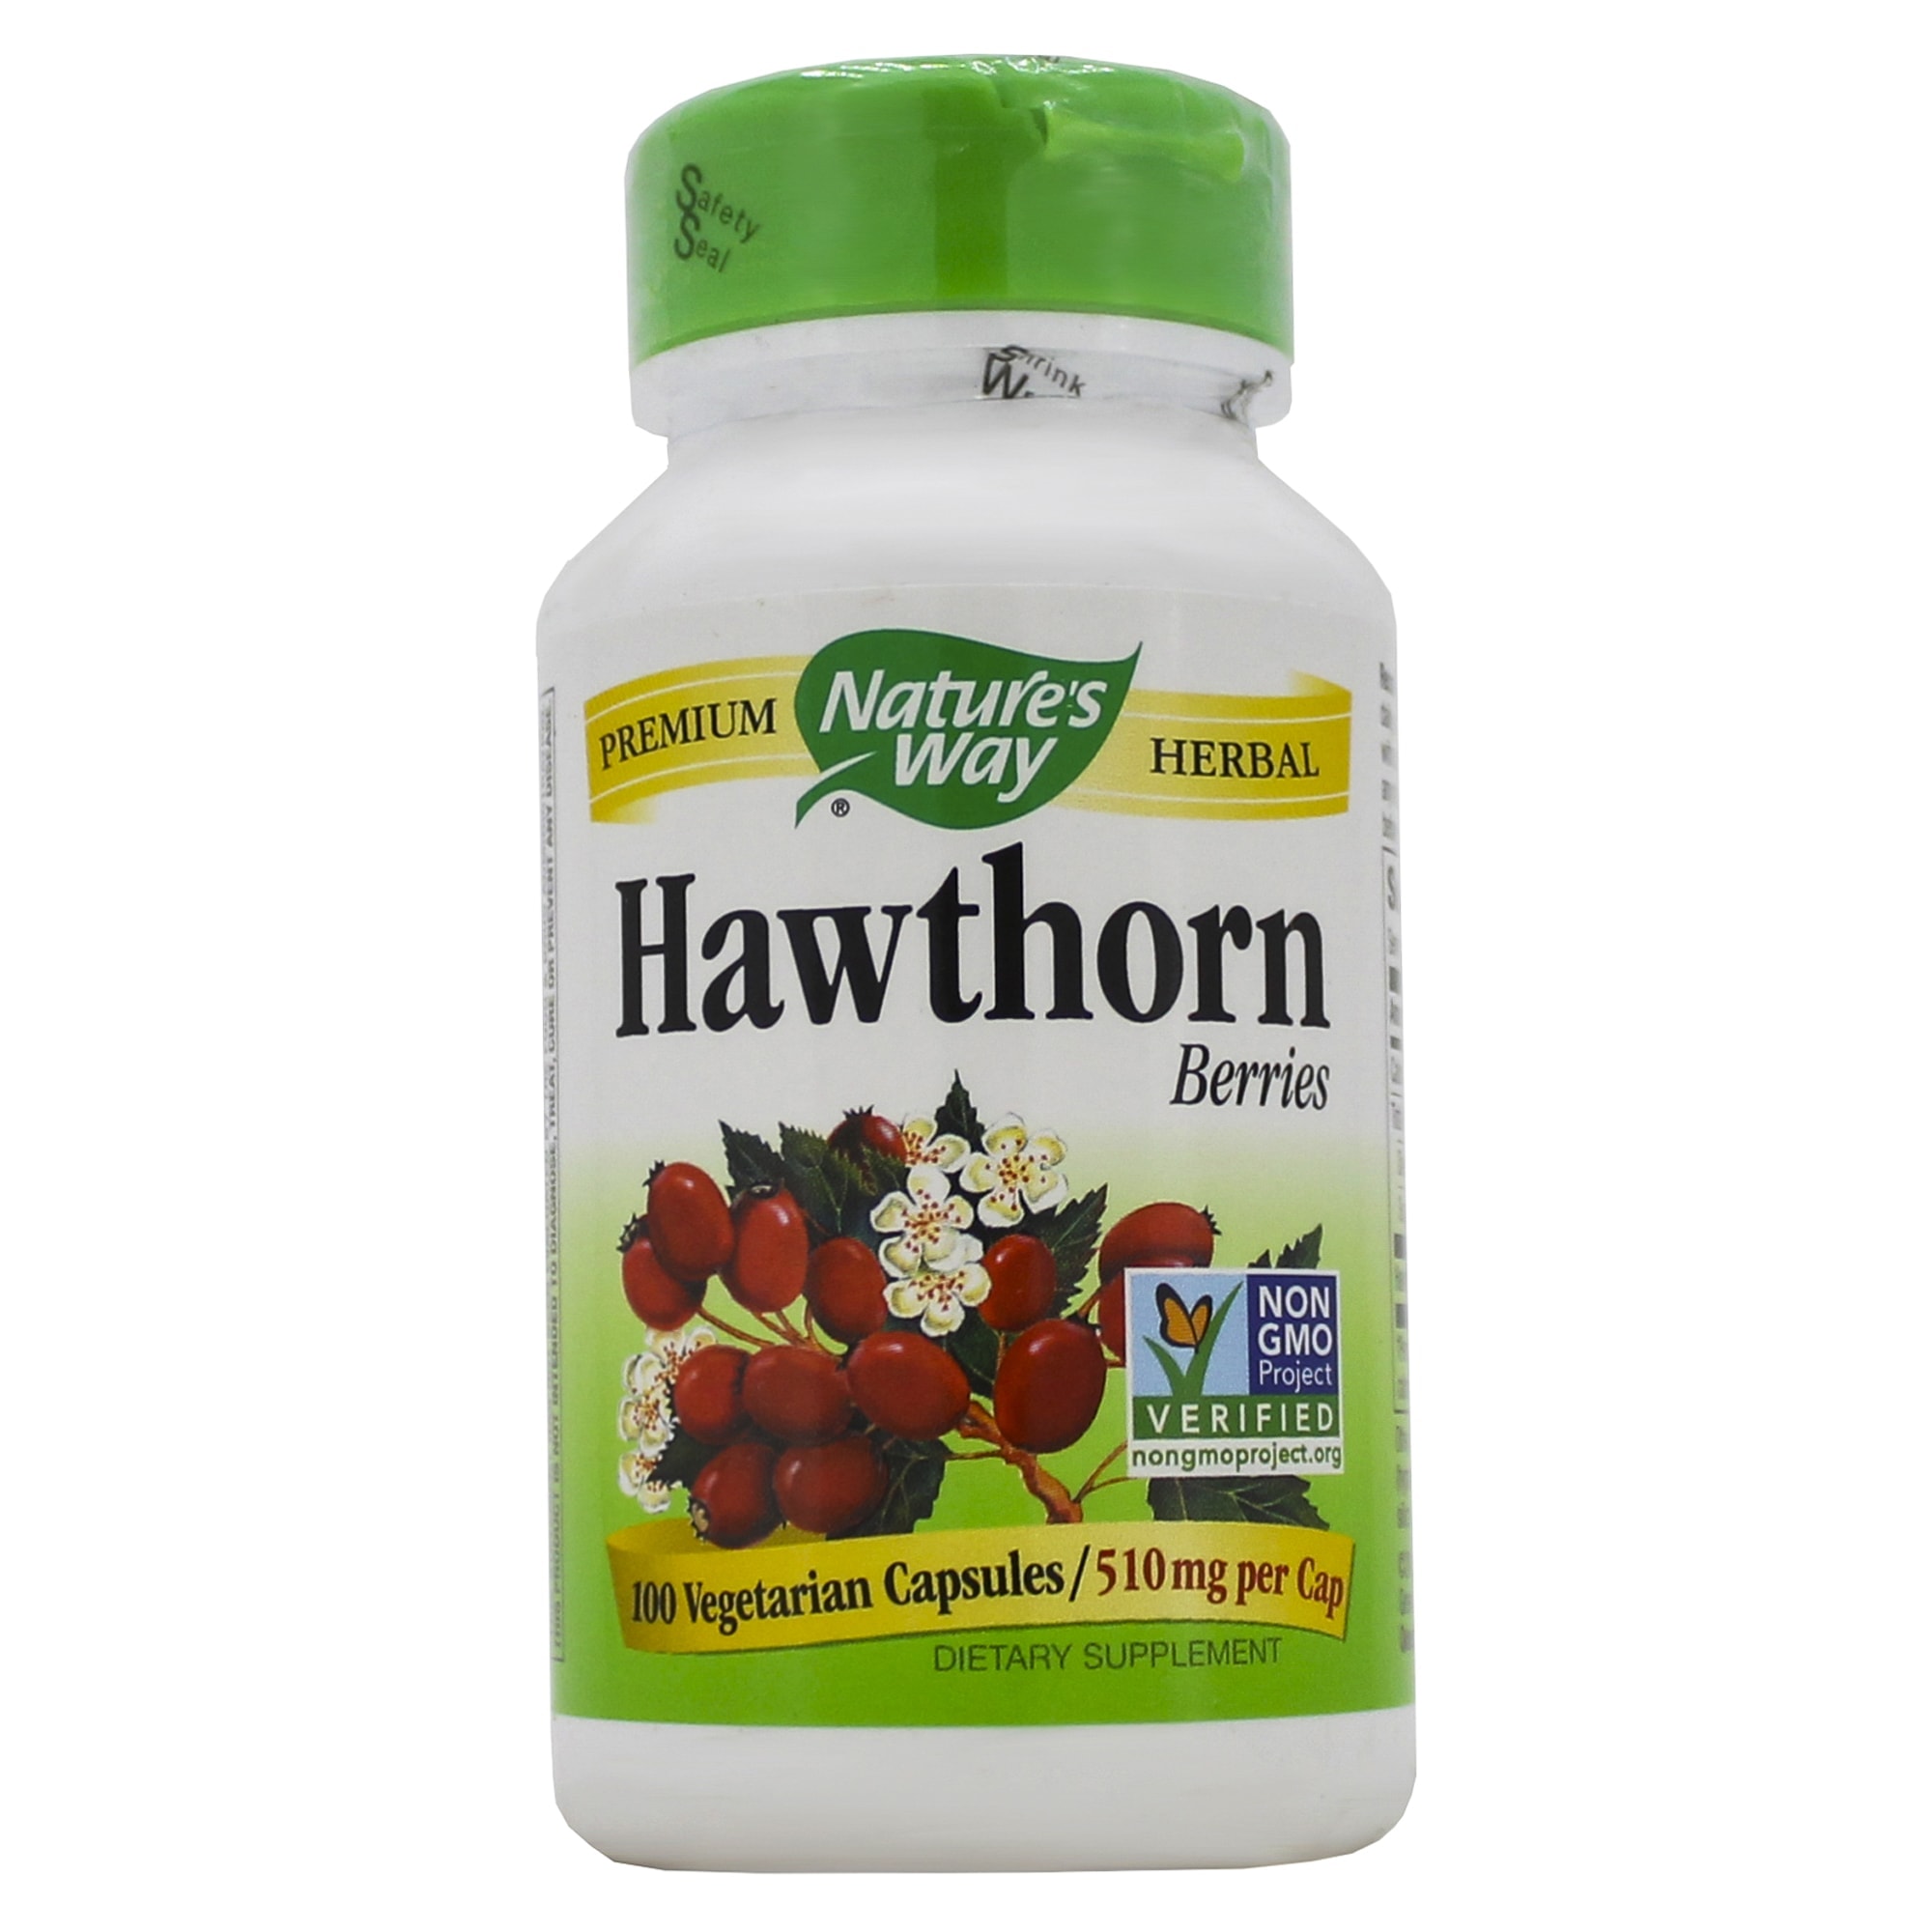 Buy Hawthorn Berries 510mg - 100 capsules Online in Canada | Spectrum ...